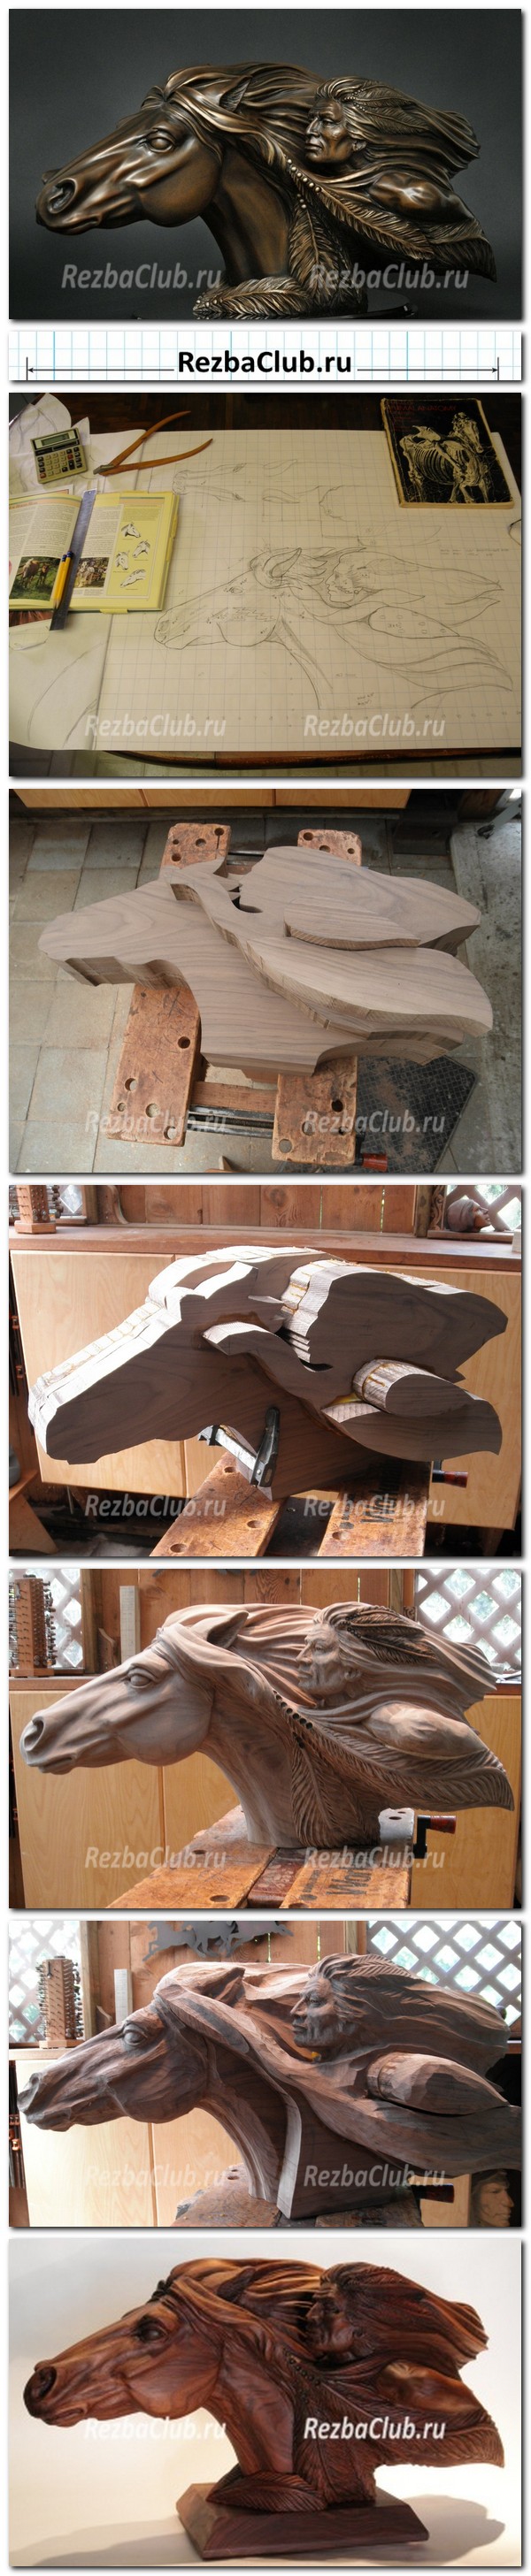 Инструкция по резьбе - Скульптура бешеная скачка - индеец на коне